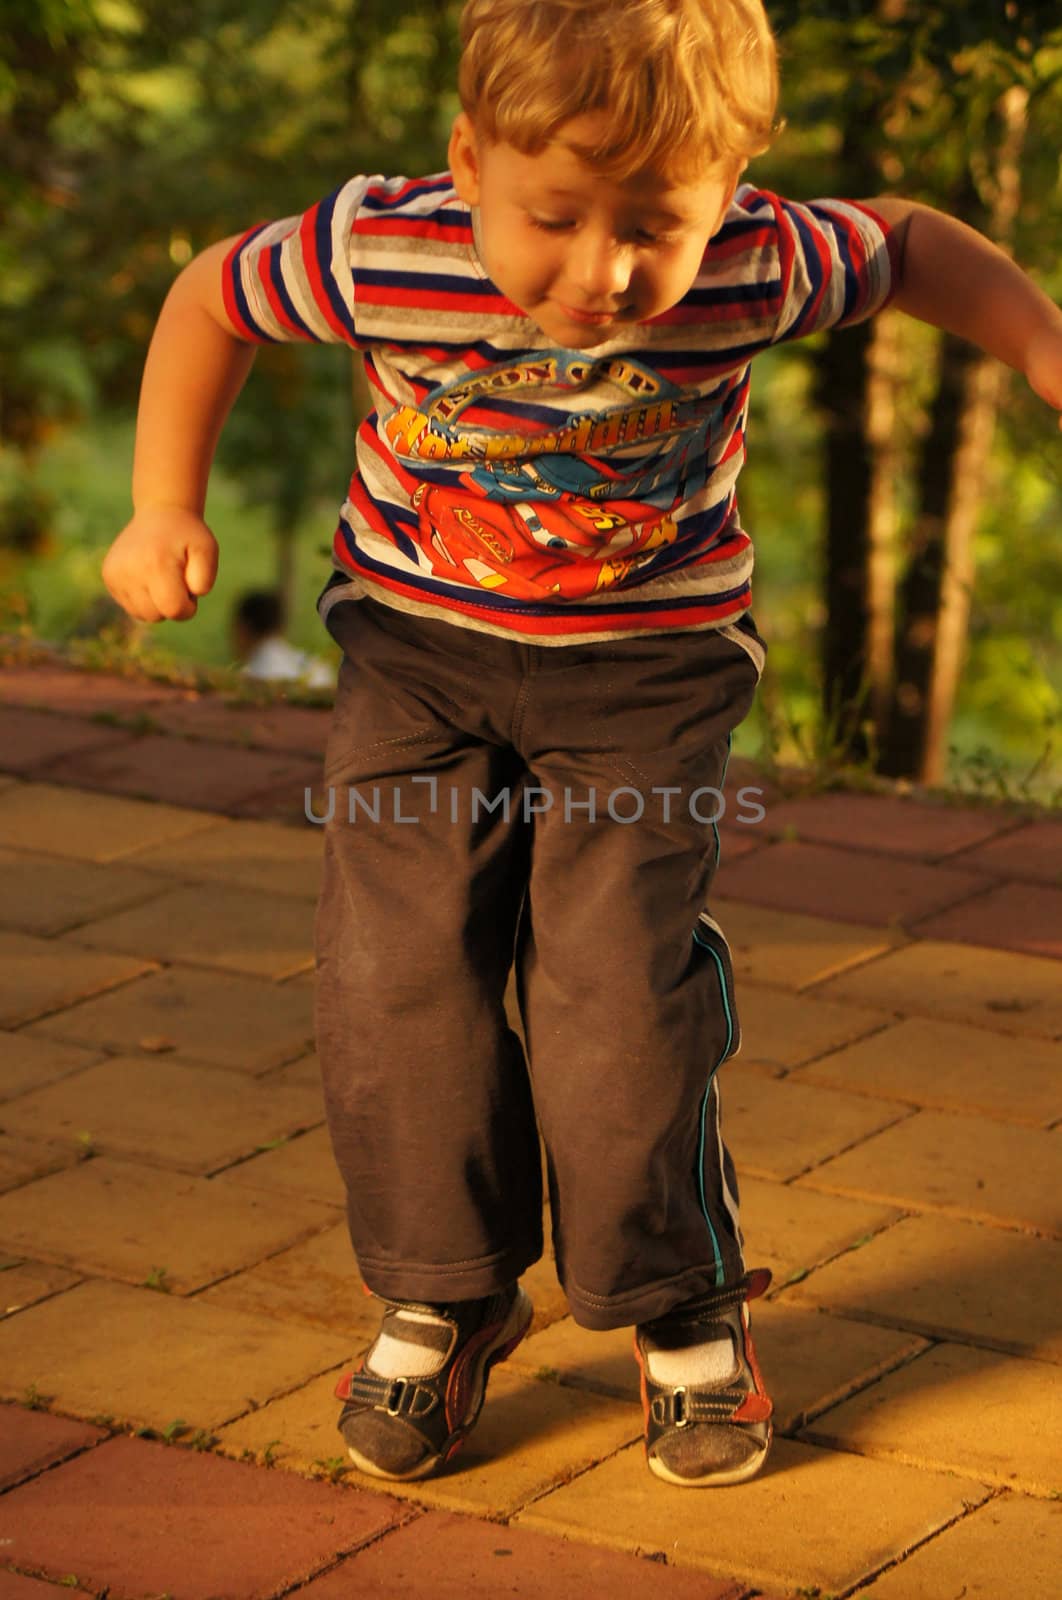 The little boy on walk